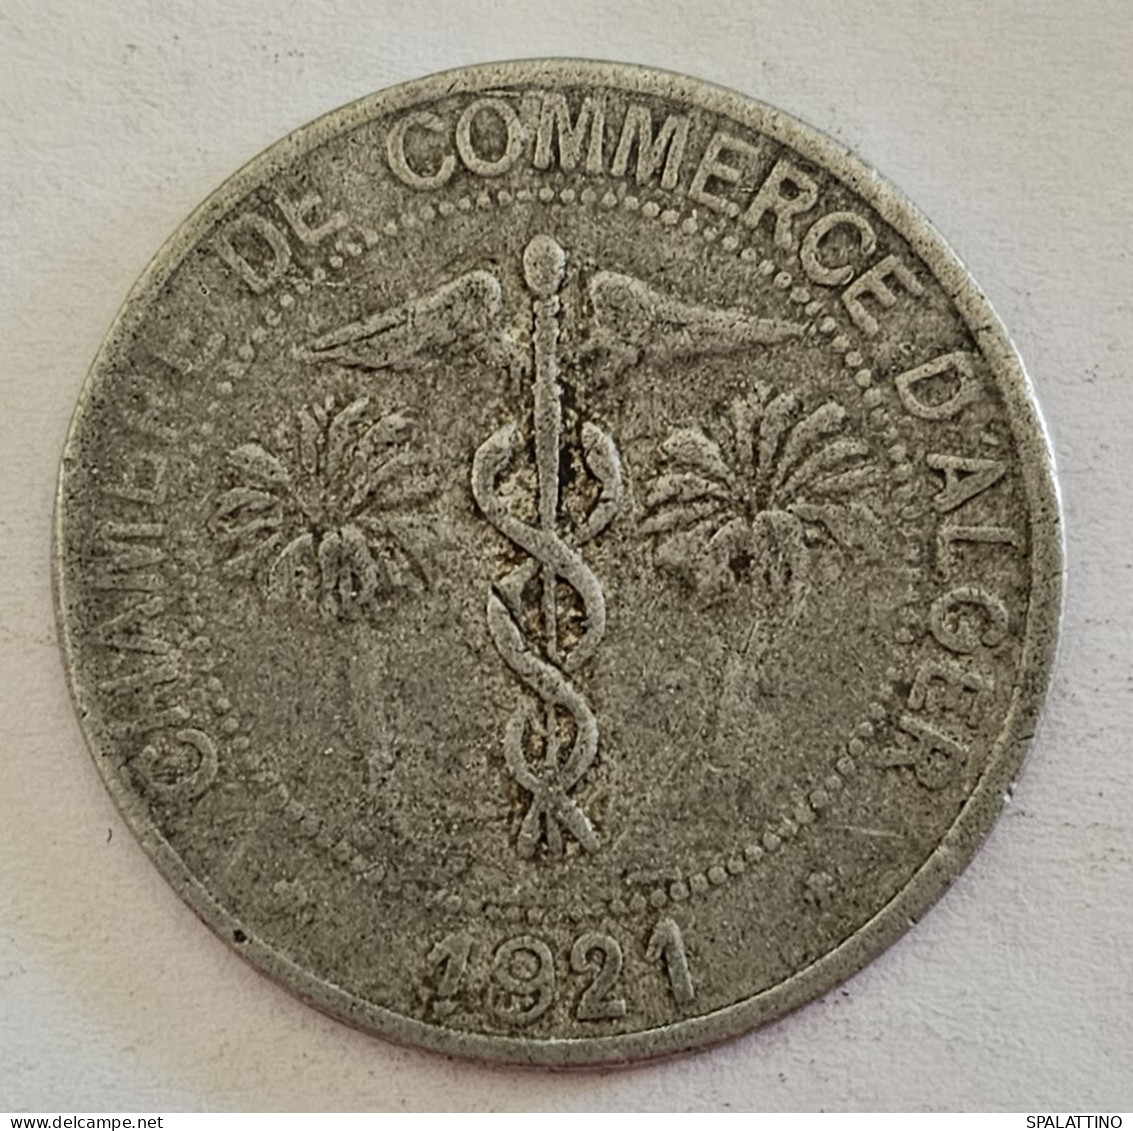 ALGERIA, ALGER- 10 CENTIMES 1921., ALGER CHAMBER OF COMMERCE - TOKEN, RARE - Monétaires / De Nécessité